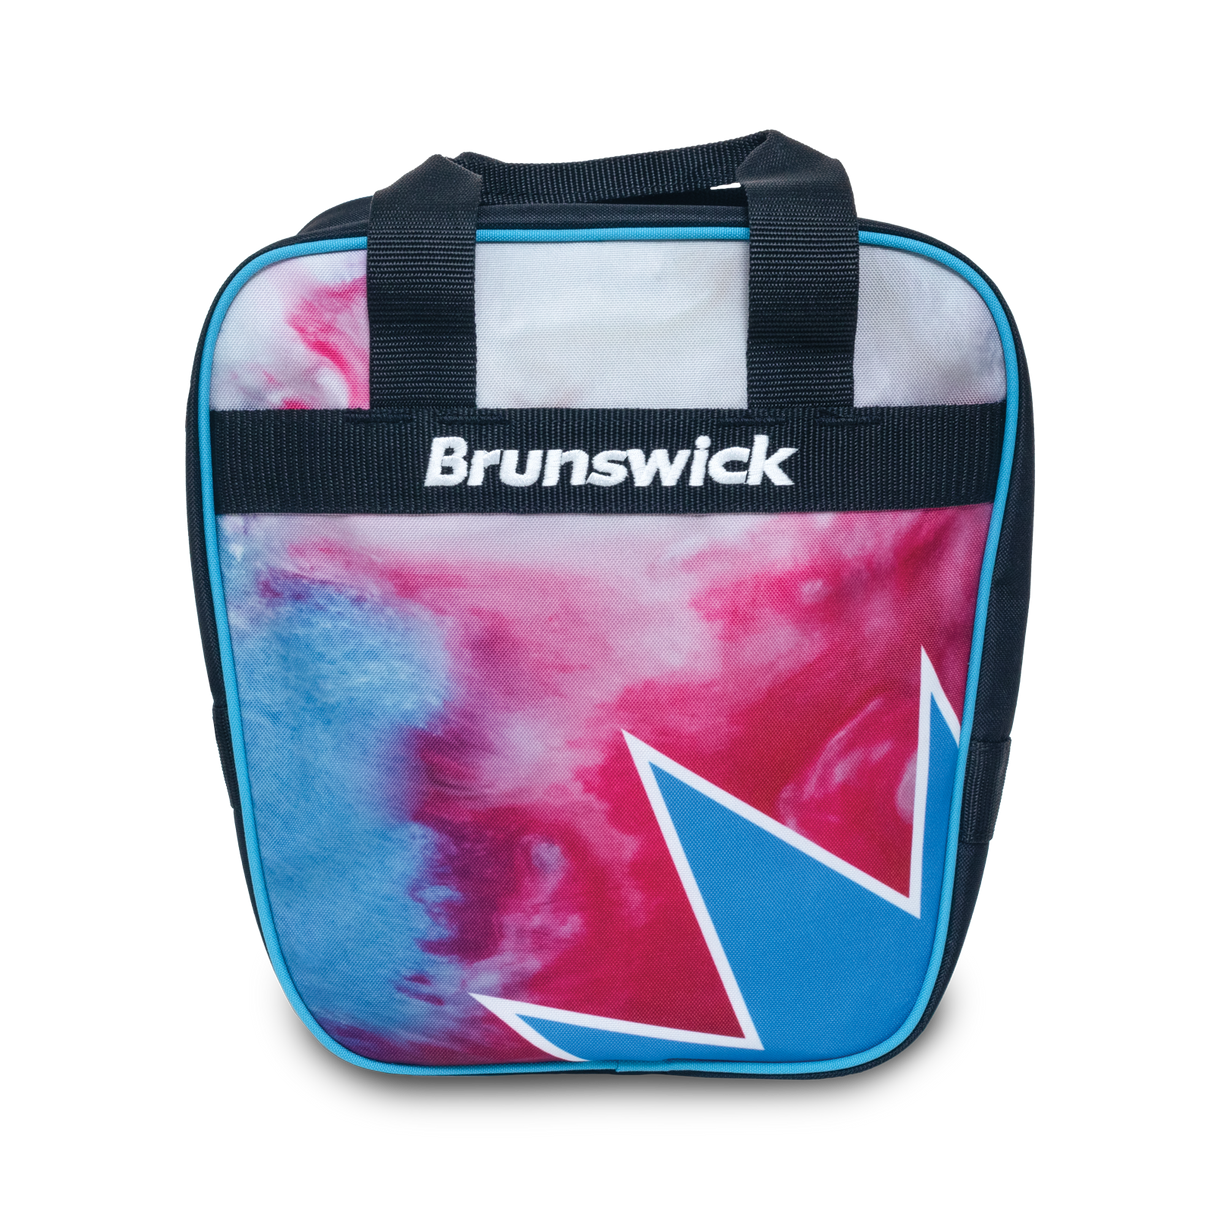 Brunswick Spark 1 Ball Single Tote Frozen Bliss Bowling Bag travel suitcase league tournament play sale discount coupon online pba tour